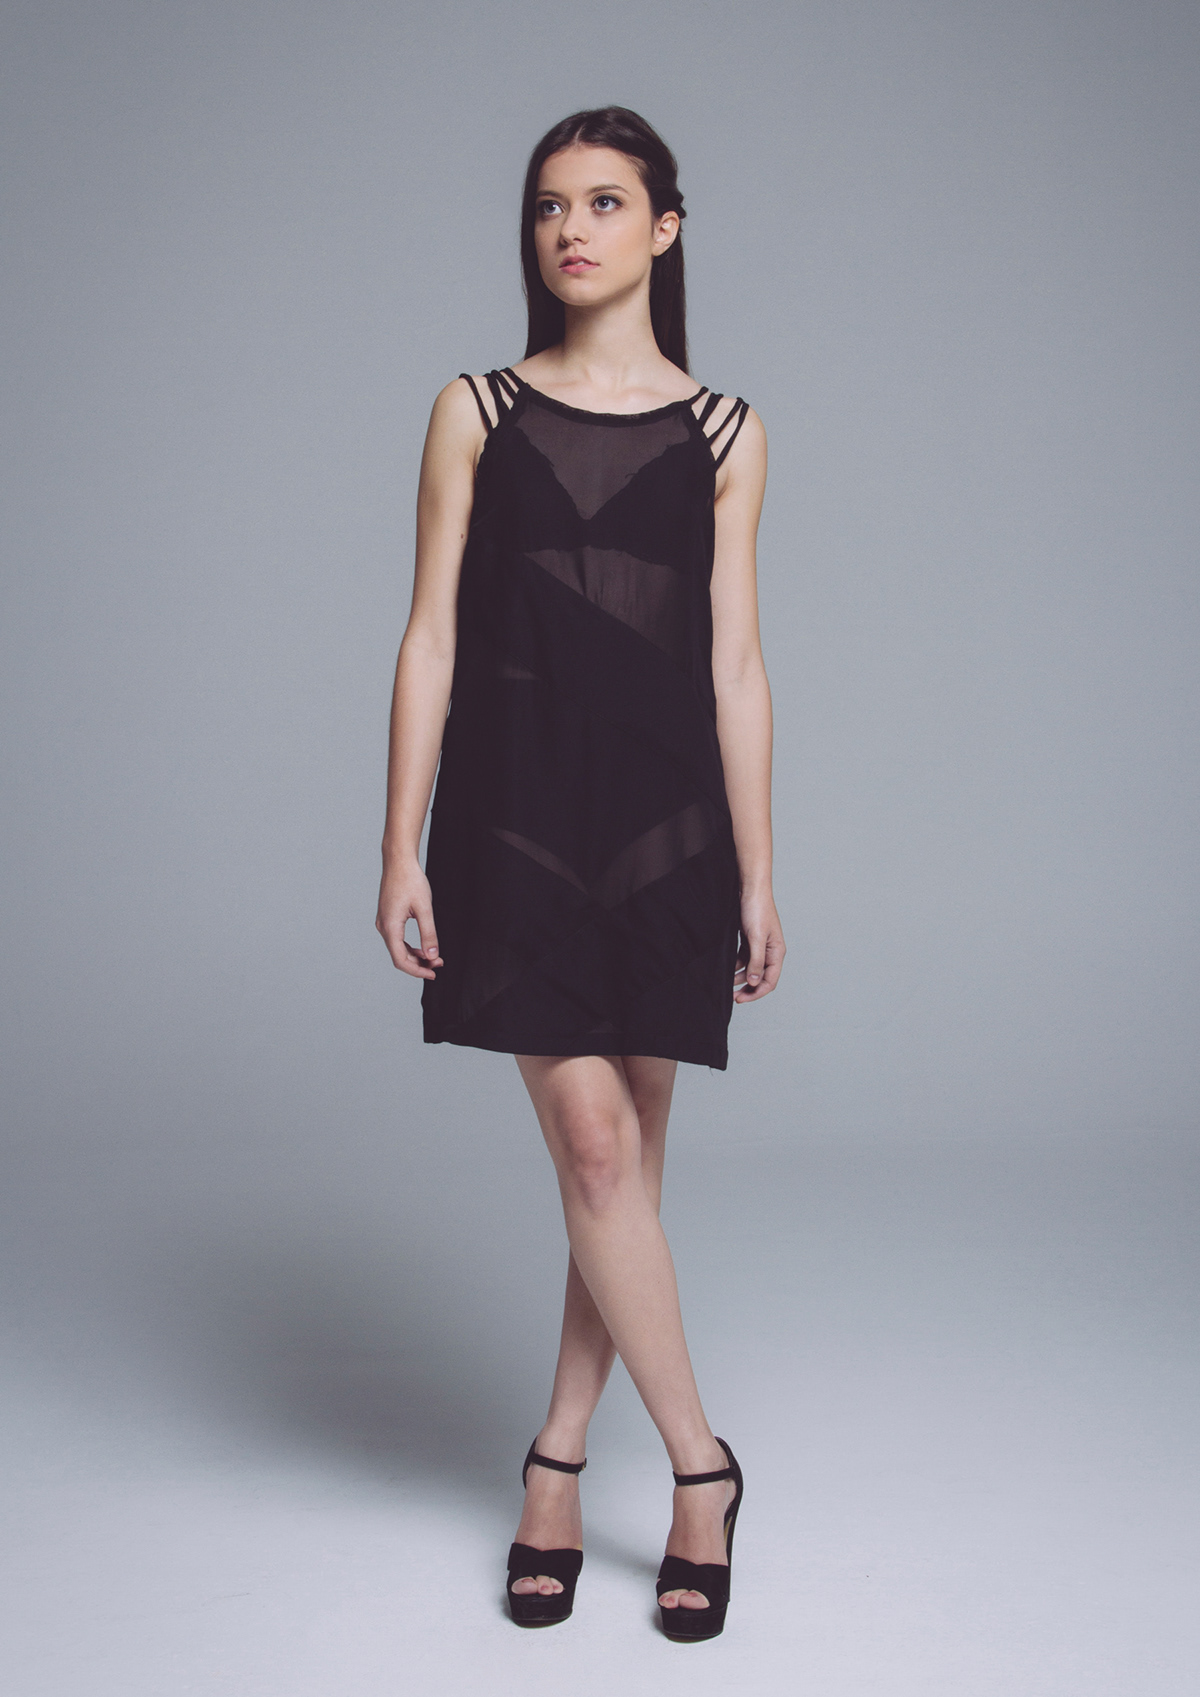 dress photoshoot black interference fabrics Style woman shape